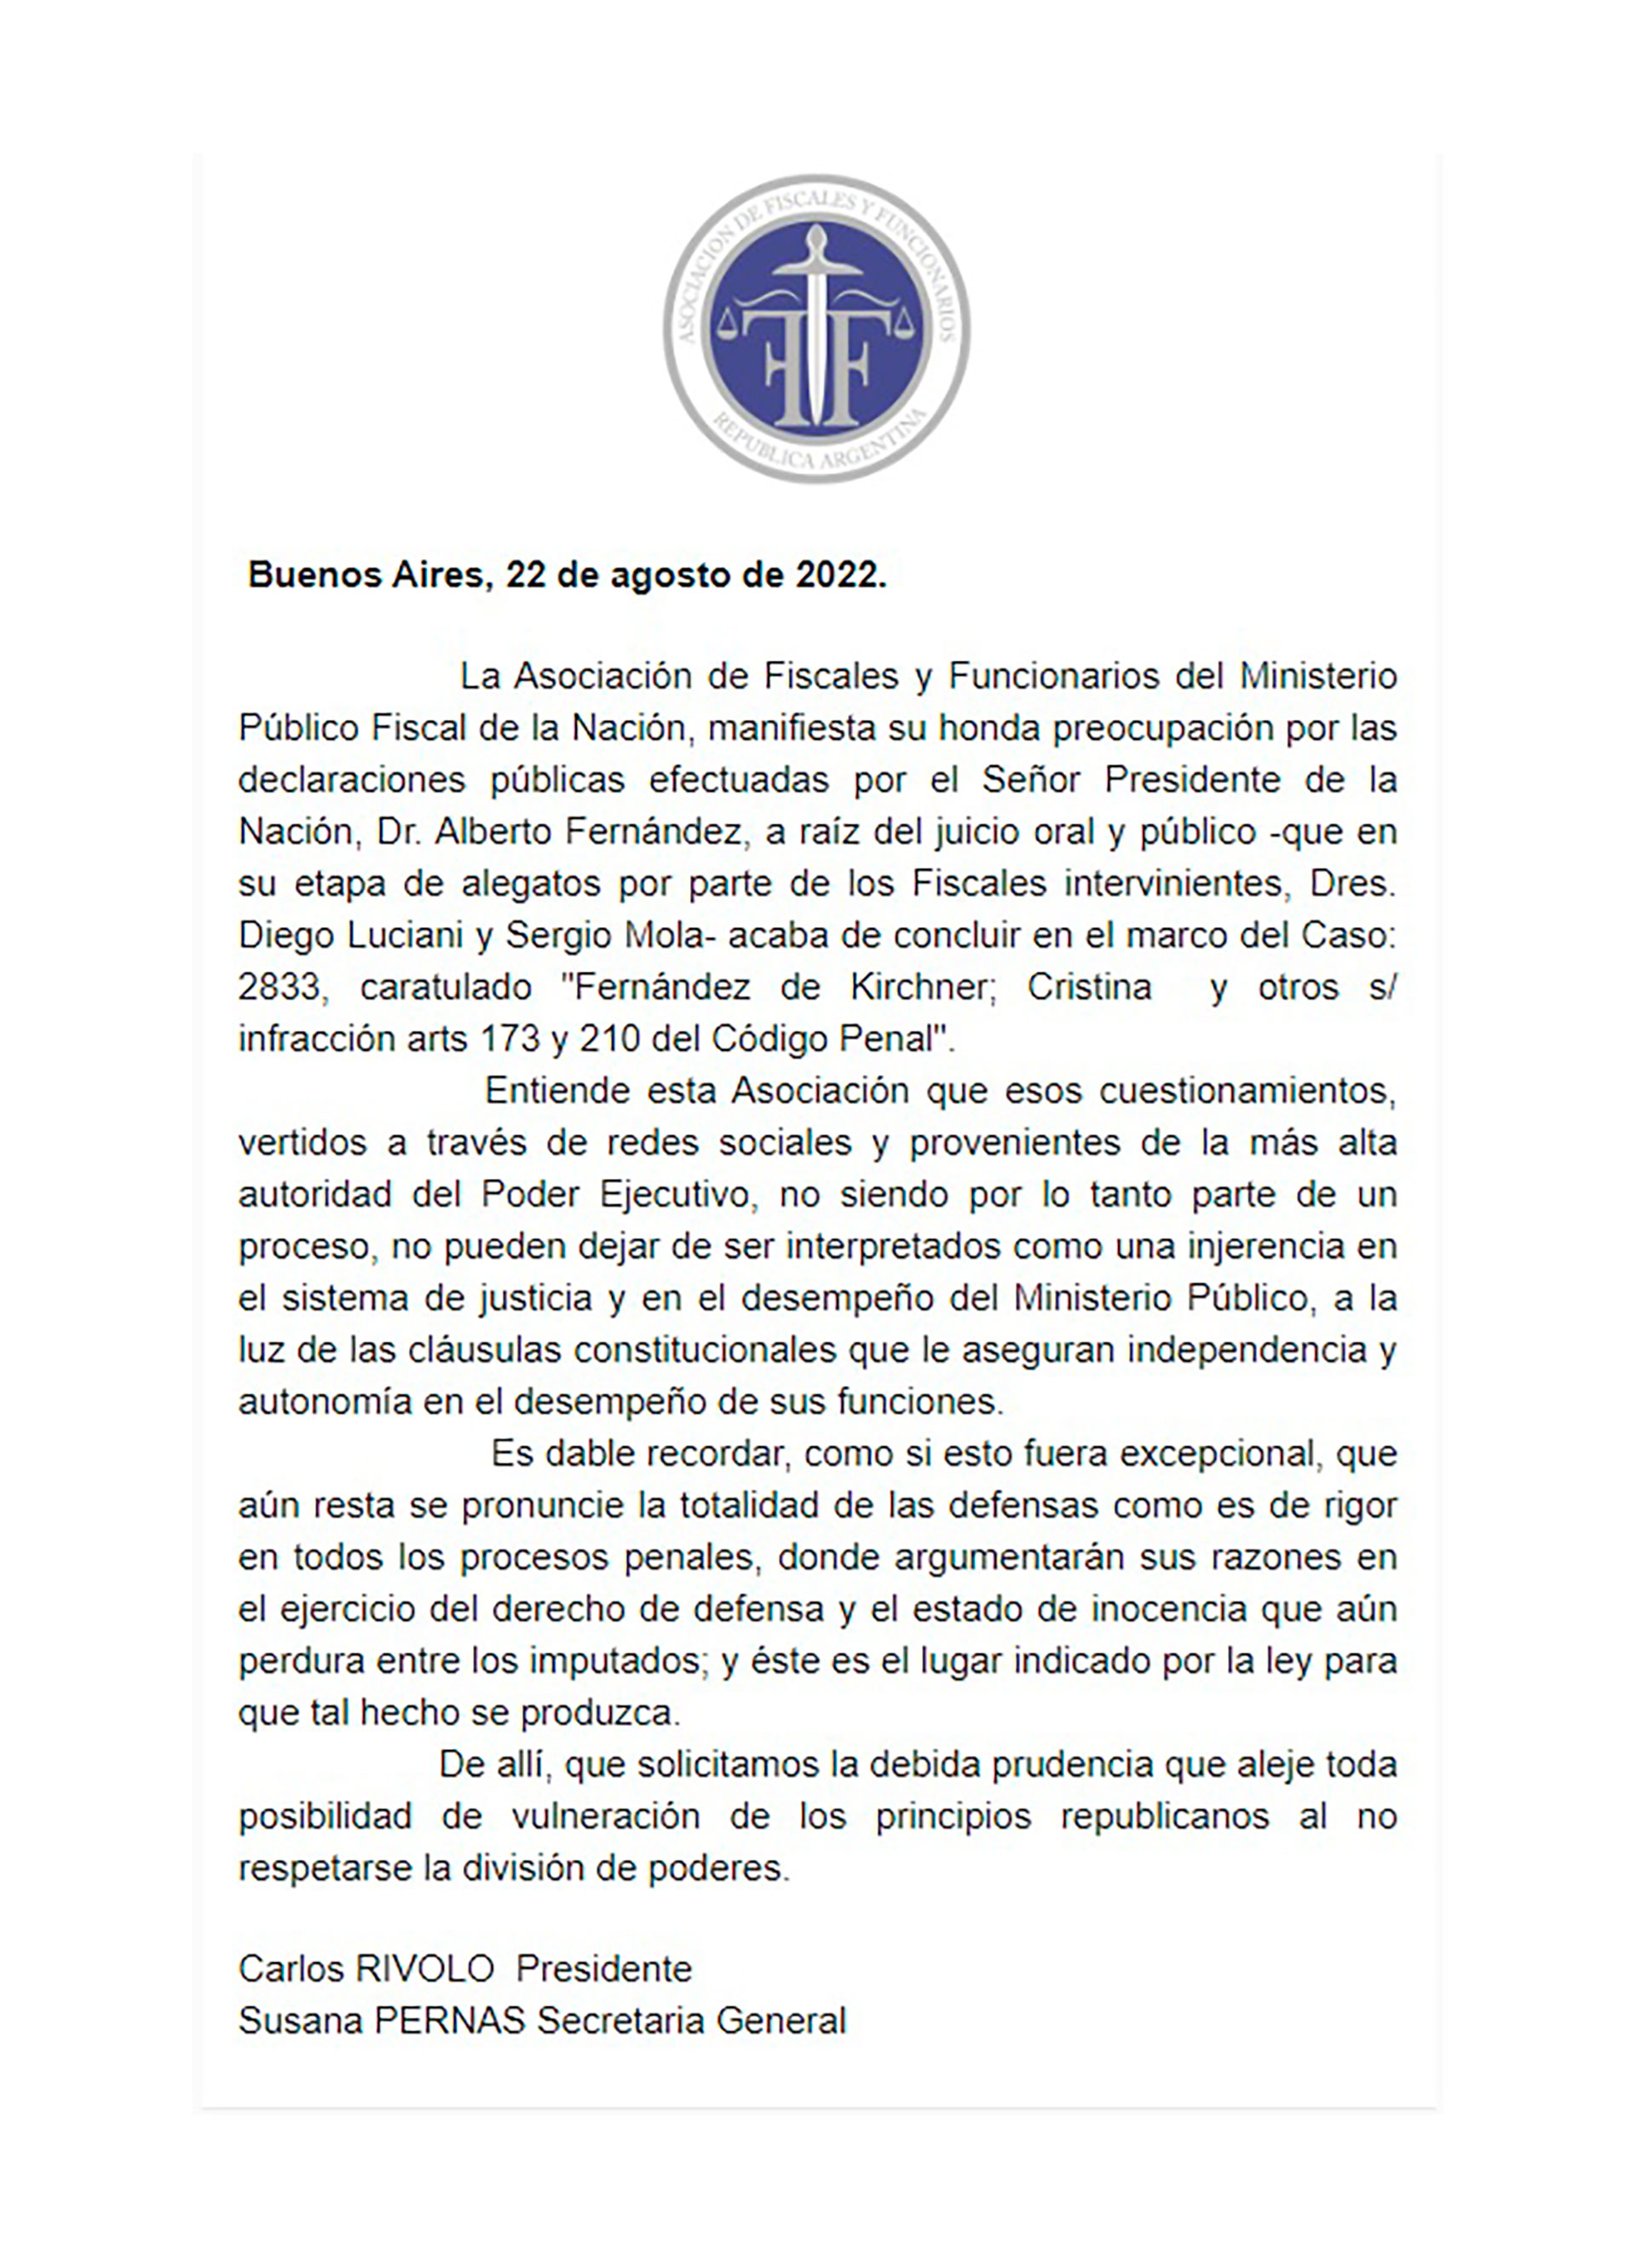 El comunicado de la Asociación de Fiscales y Funcionarios del Ministerio Público Fiscal de la Nación